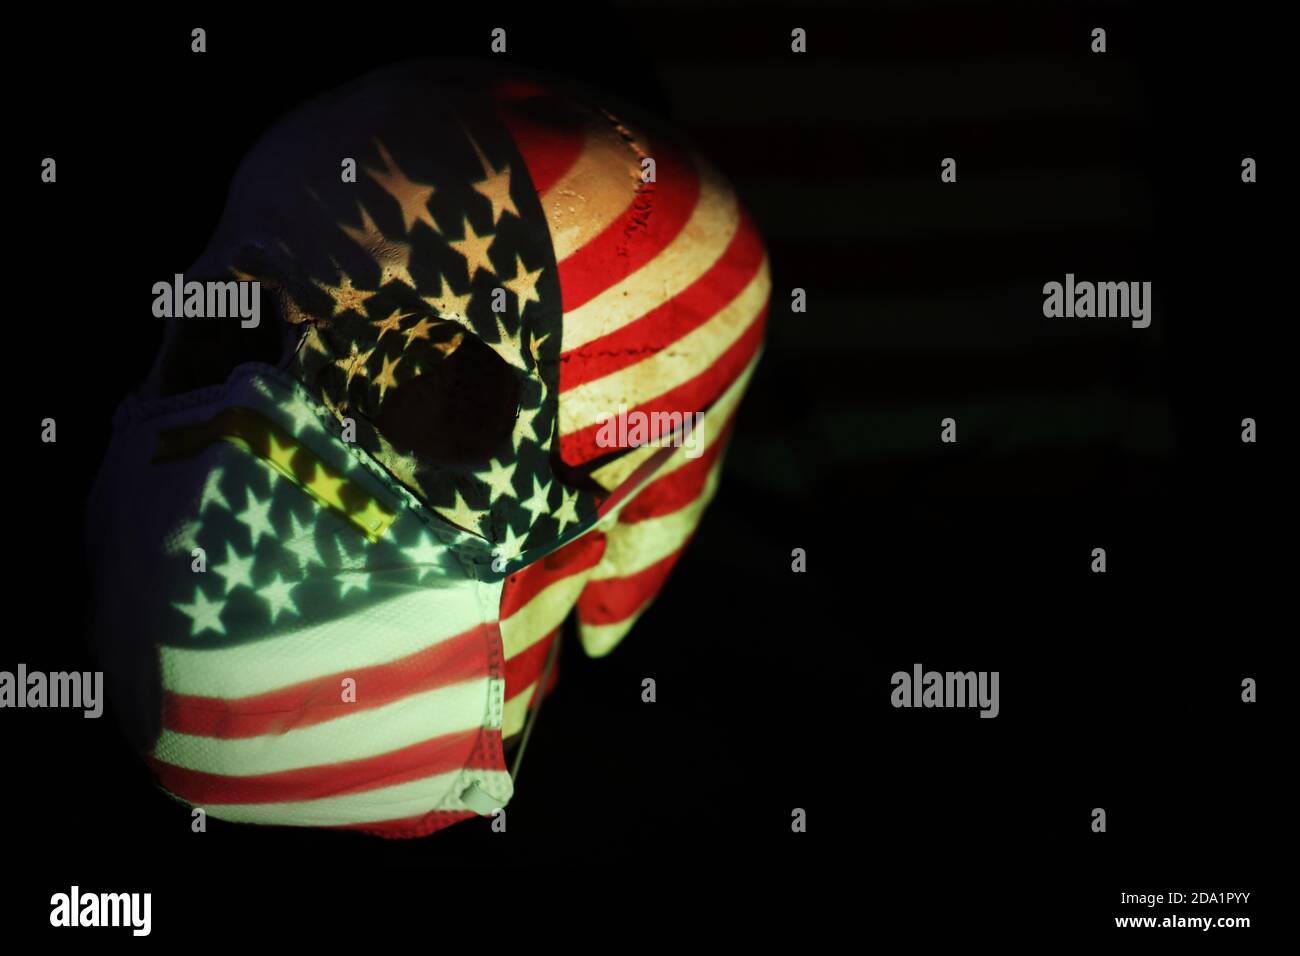 Die amerikanische Sterne- und Streifenflagge projizierte sich über einen Schädel und trug eine atmende Gesichtsmaske. Corona Virus covid 19 globale Pandemie soziale Distanzierung meas Stockfoto